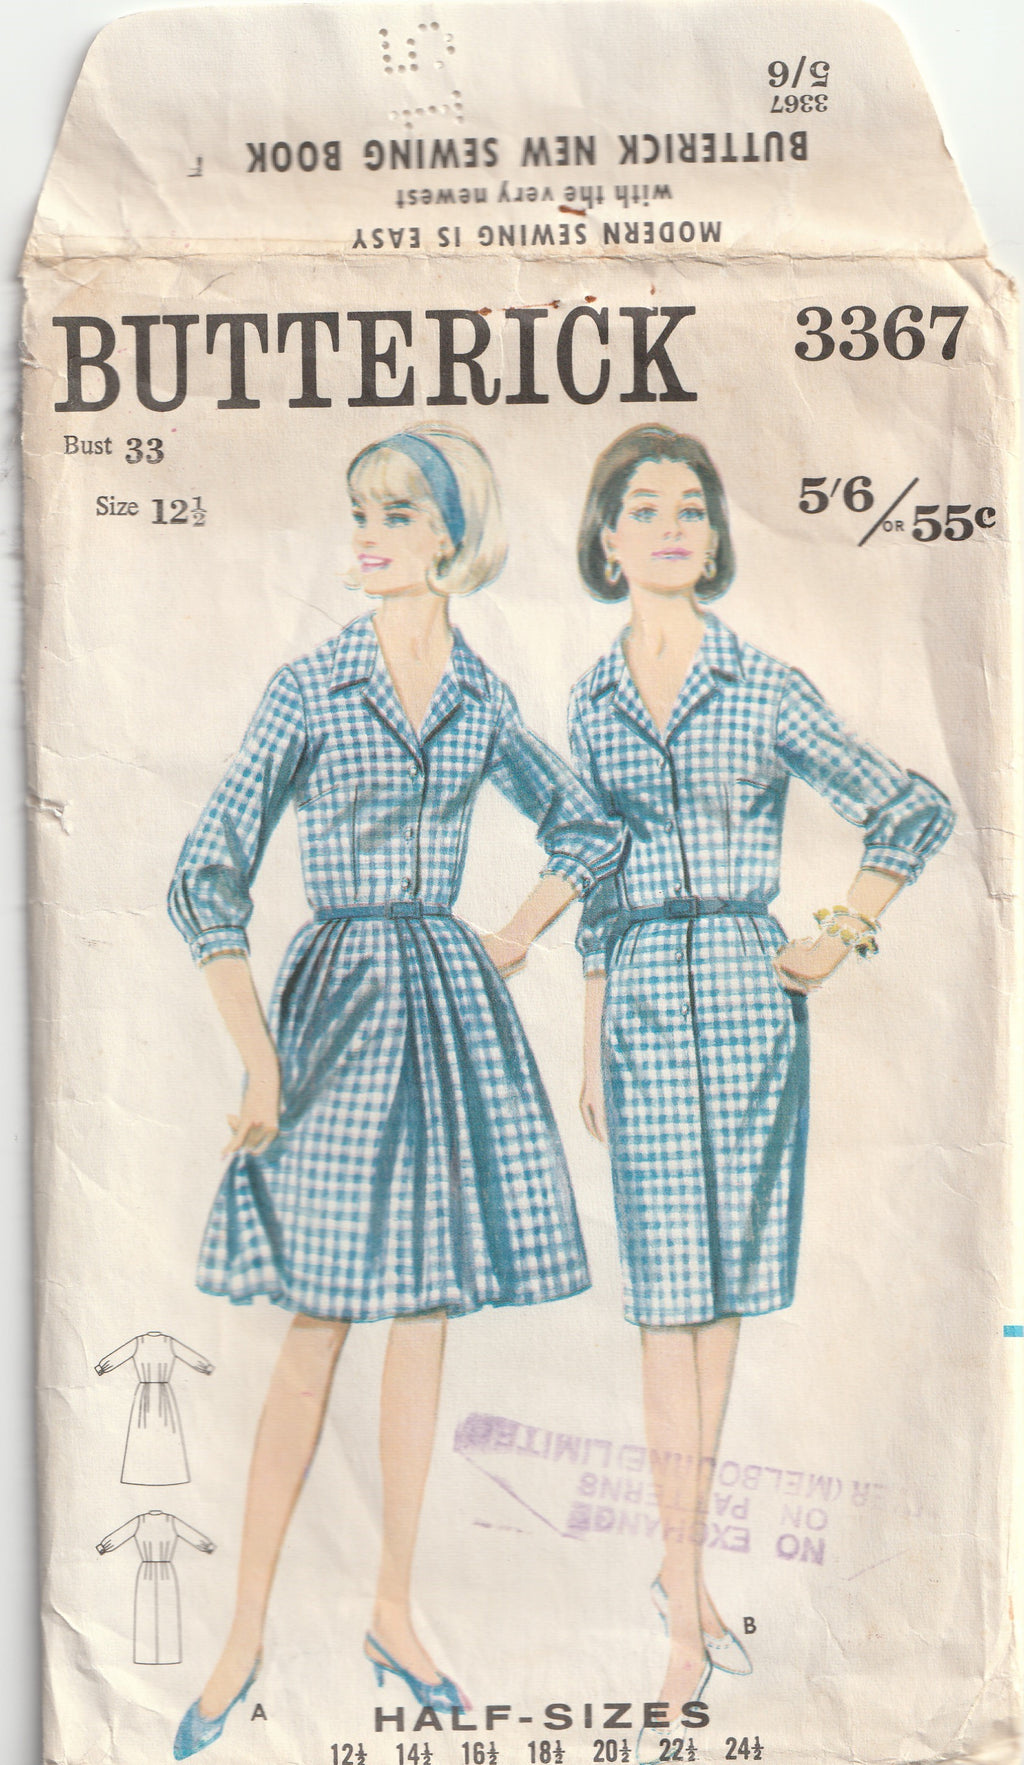 1960s vintage pattern shirtwaist dress butterick 3367 bust 84 cm